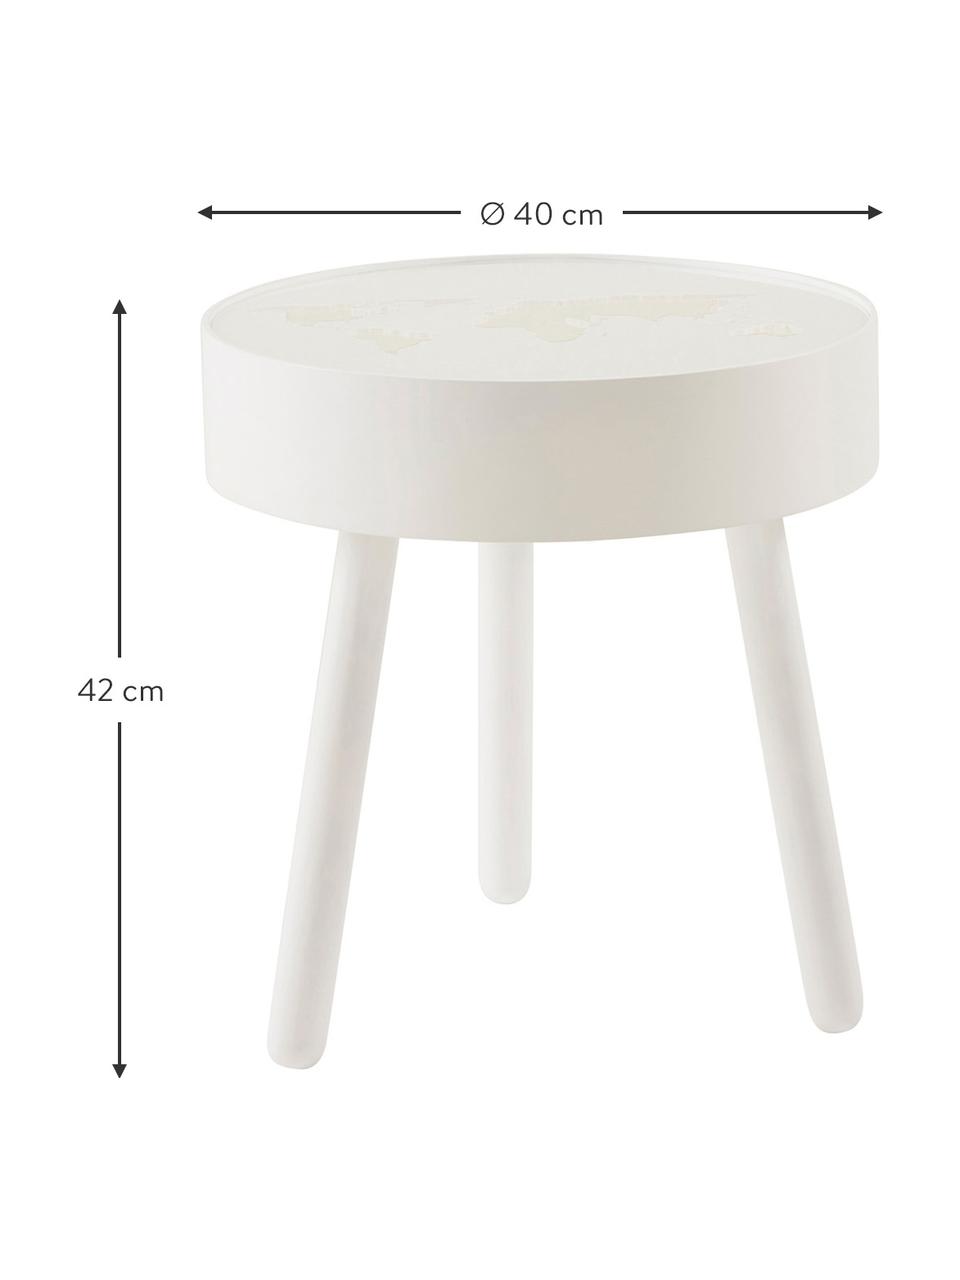 Holztisch Monroy mit integrierter LED-Beleuchtung, Gestell: Holz, Tischplatte: Acrylglas, Weiß, Ø 40 x H 42 cm